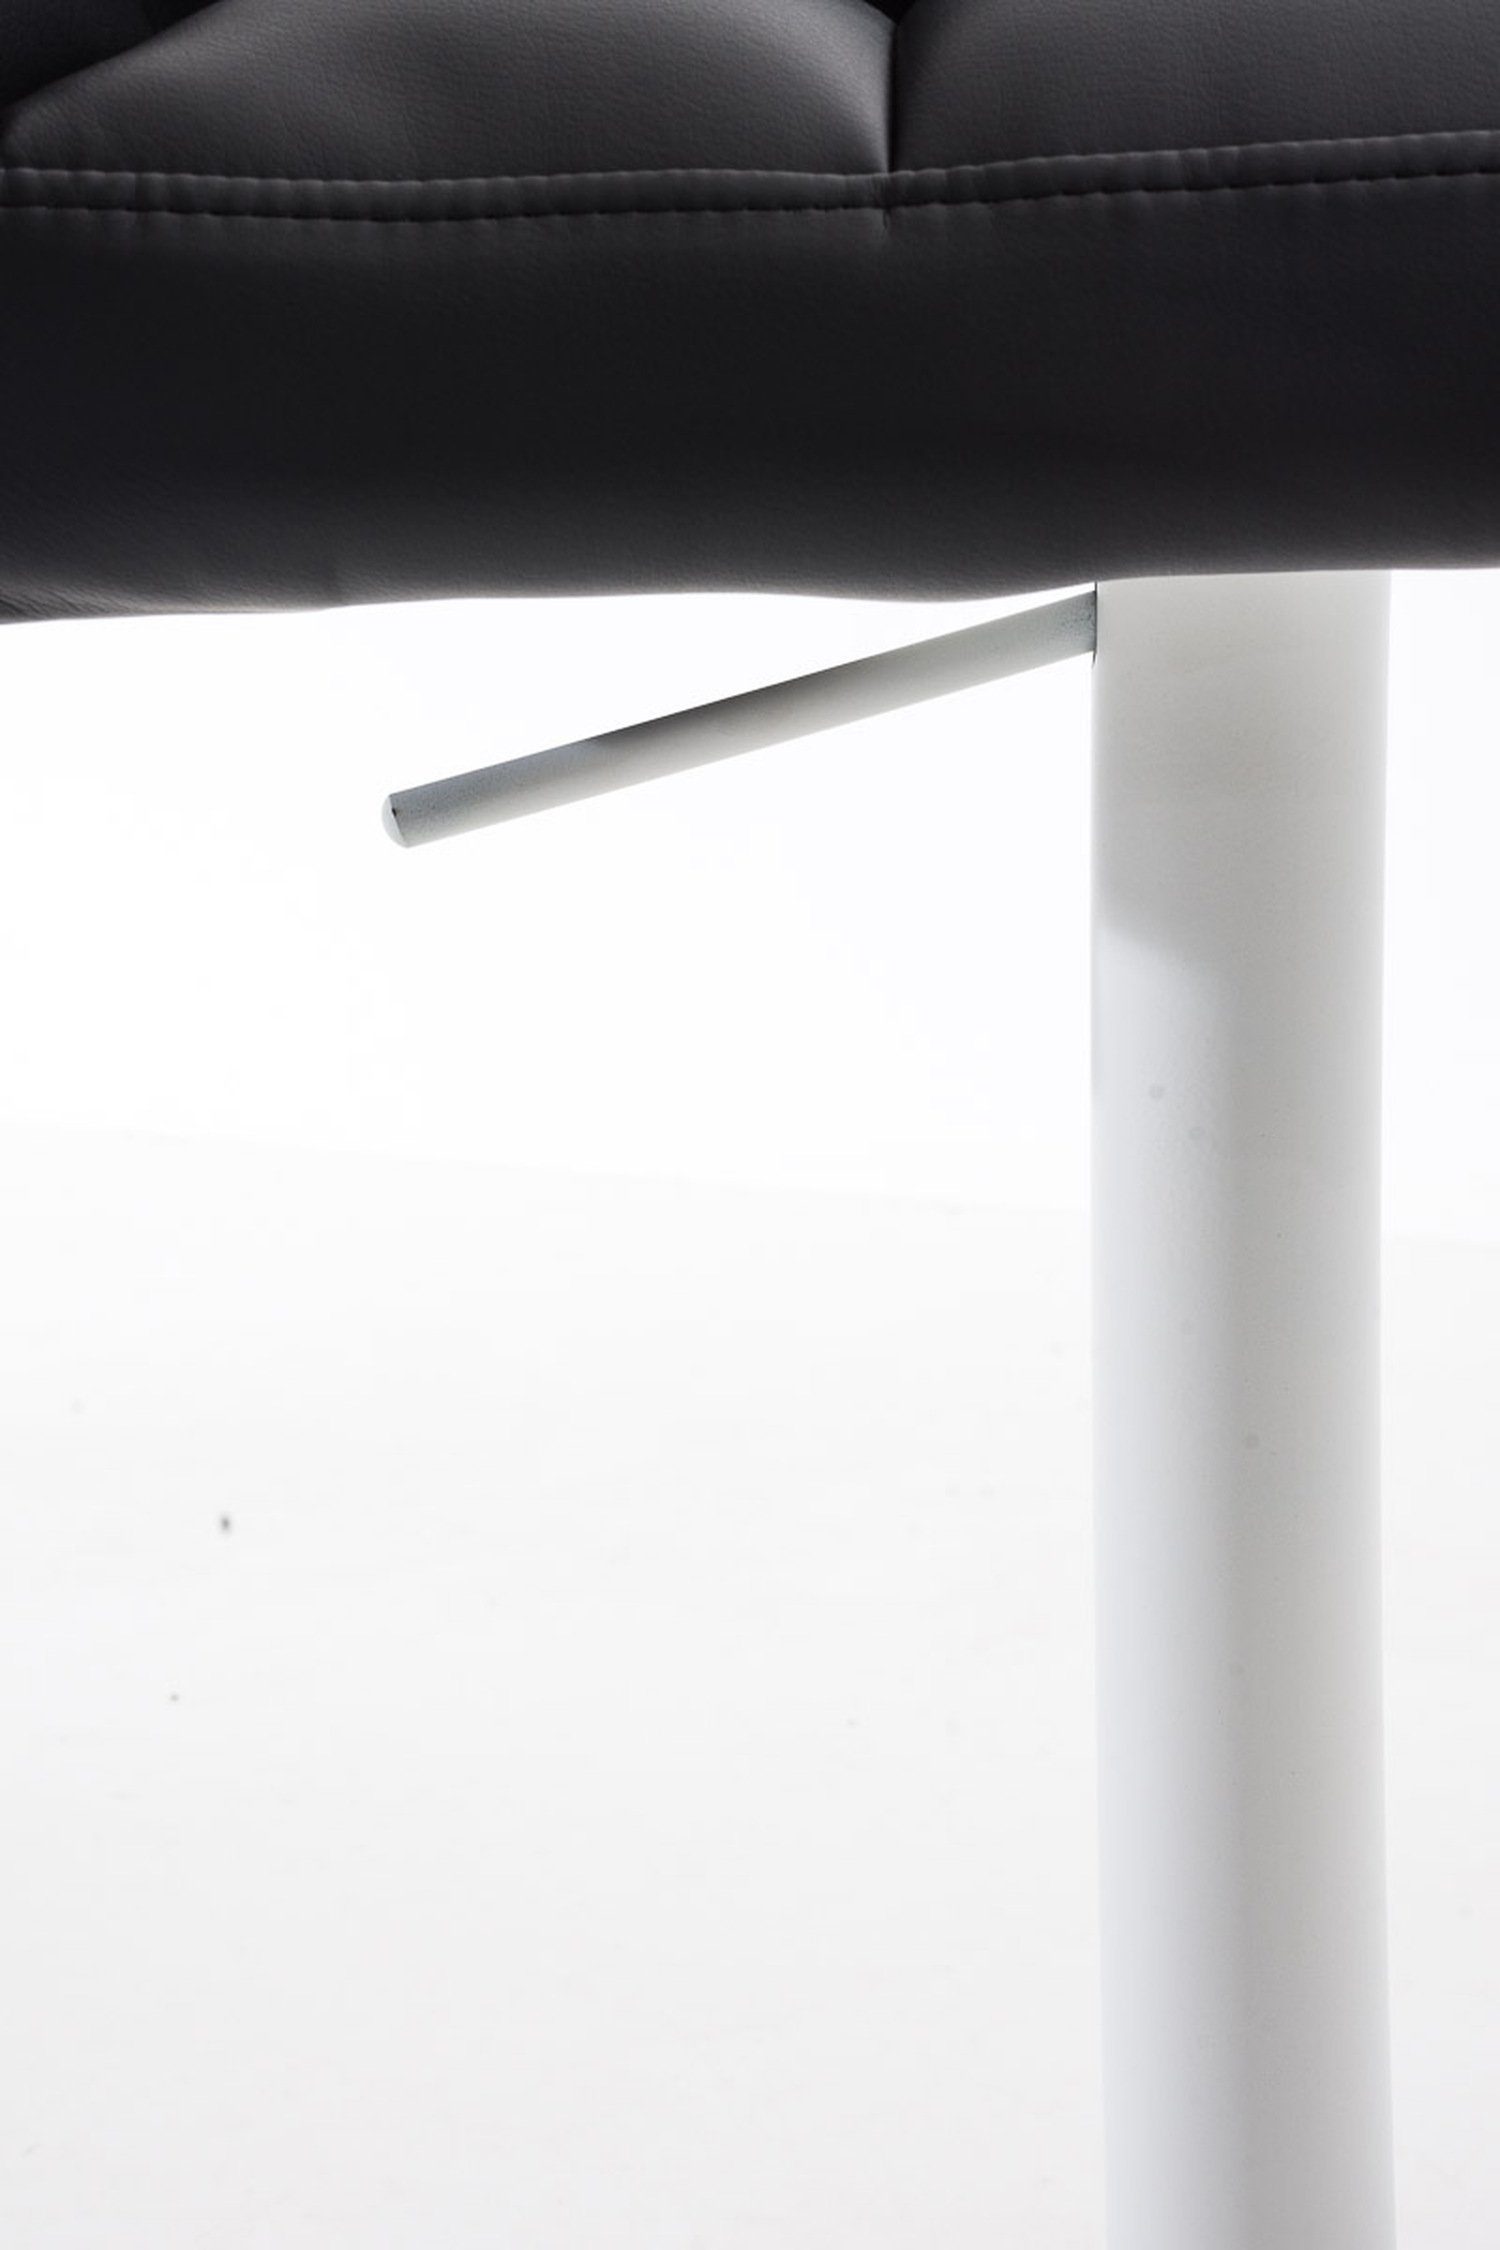 und für & Küche), Theke Schwarz - drehbar Metall Fußstütze - Rückenlehne Hocker Damaso weiß - Sitzfläche: Barhocker (mit 360° Kunstleder TPFLiving